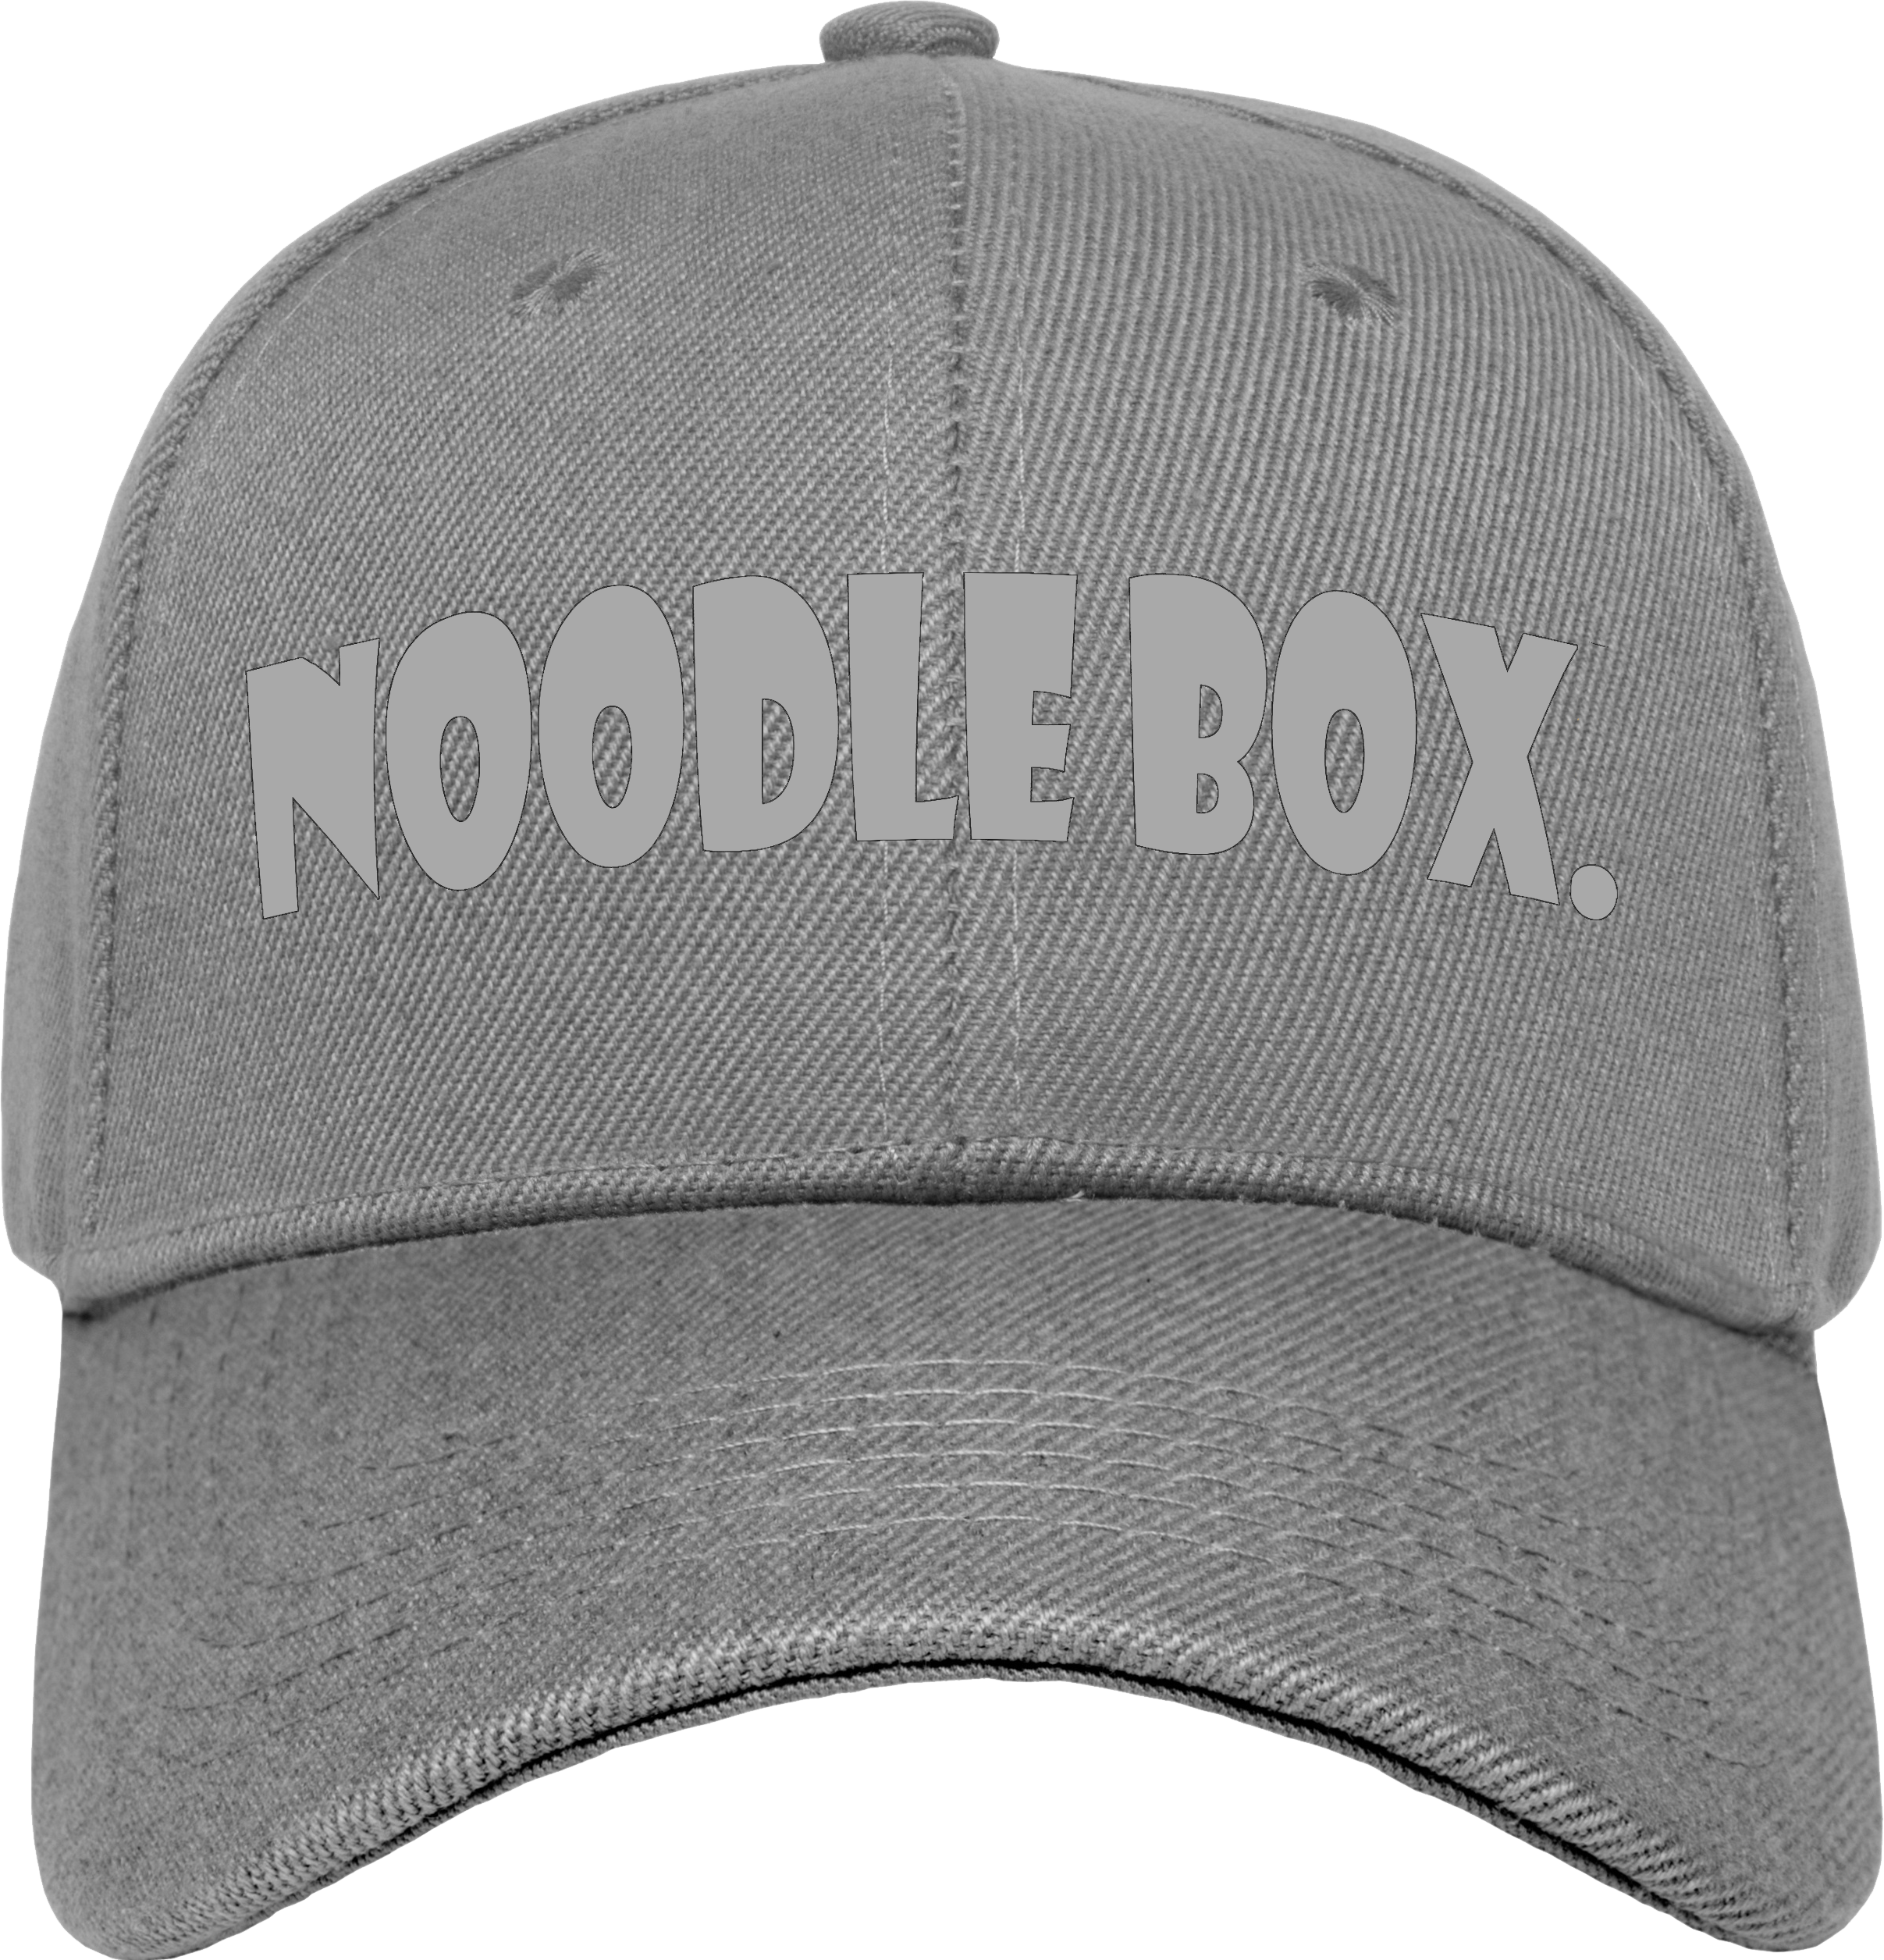 Noodle Box LOGO CAP